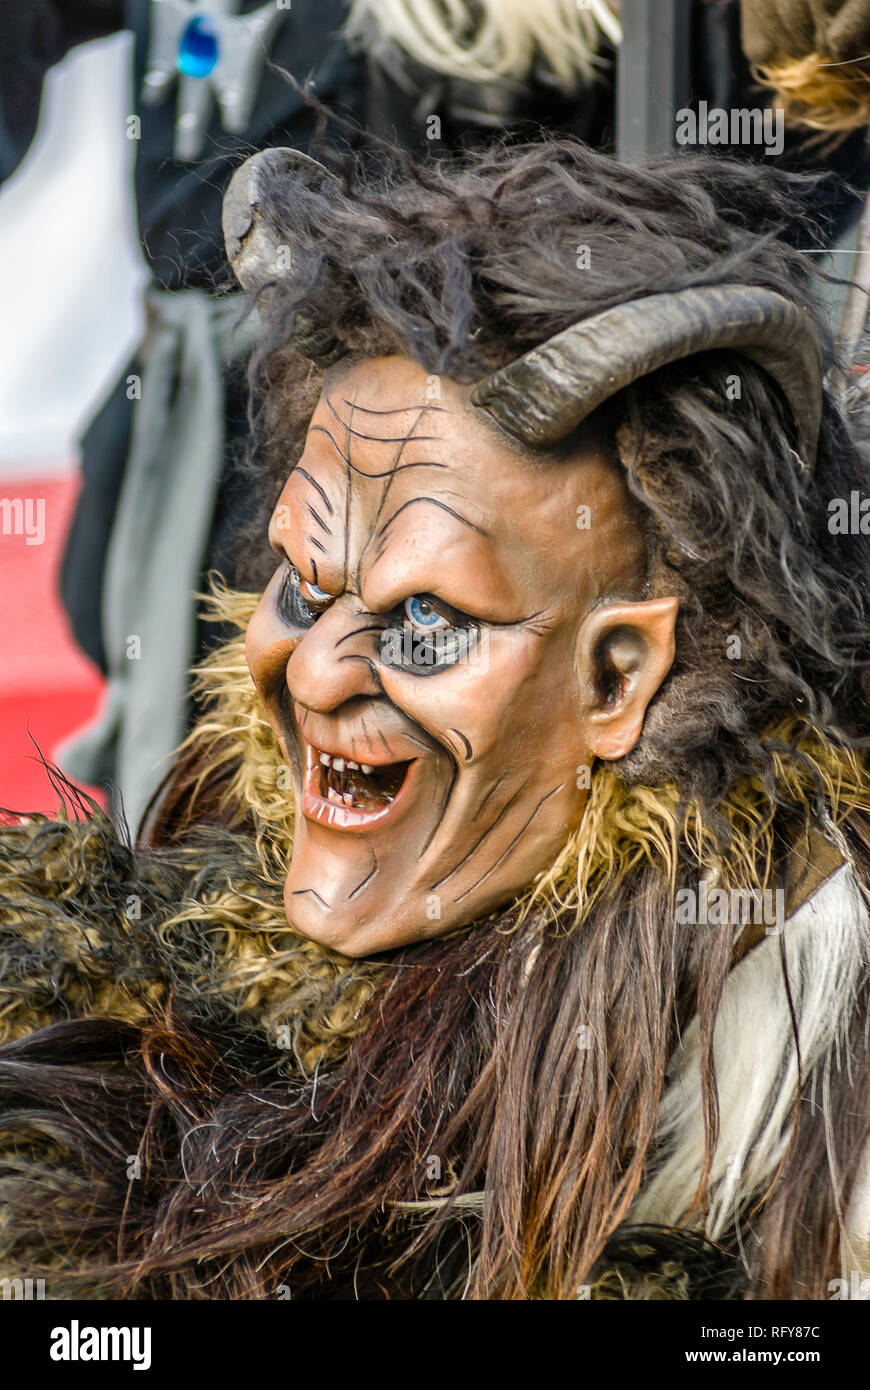 Portrait d'un masque de sorcière traditionnel souabe-alemannique au Carnaval de Lucerne, en Suisse Banque D'Images